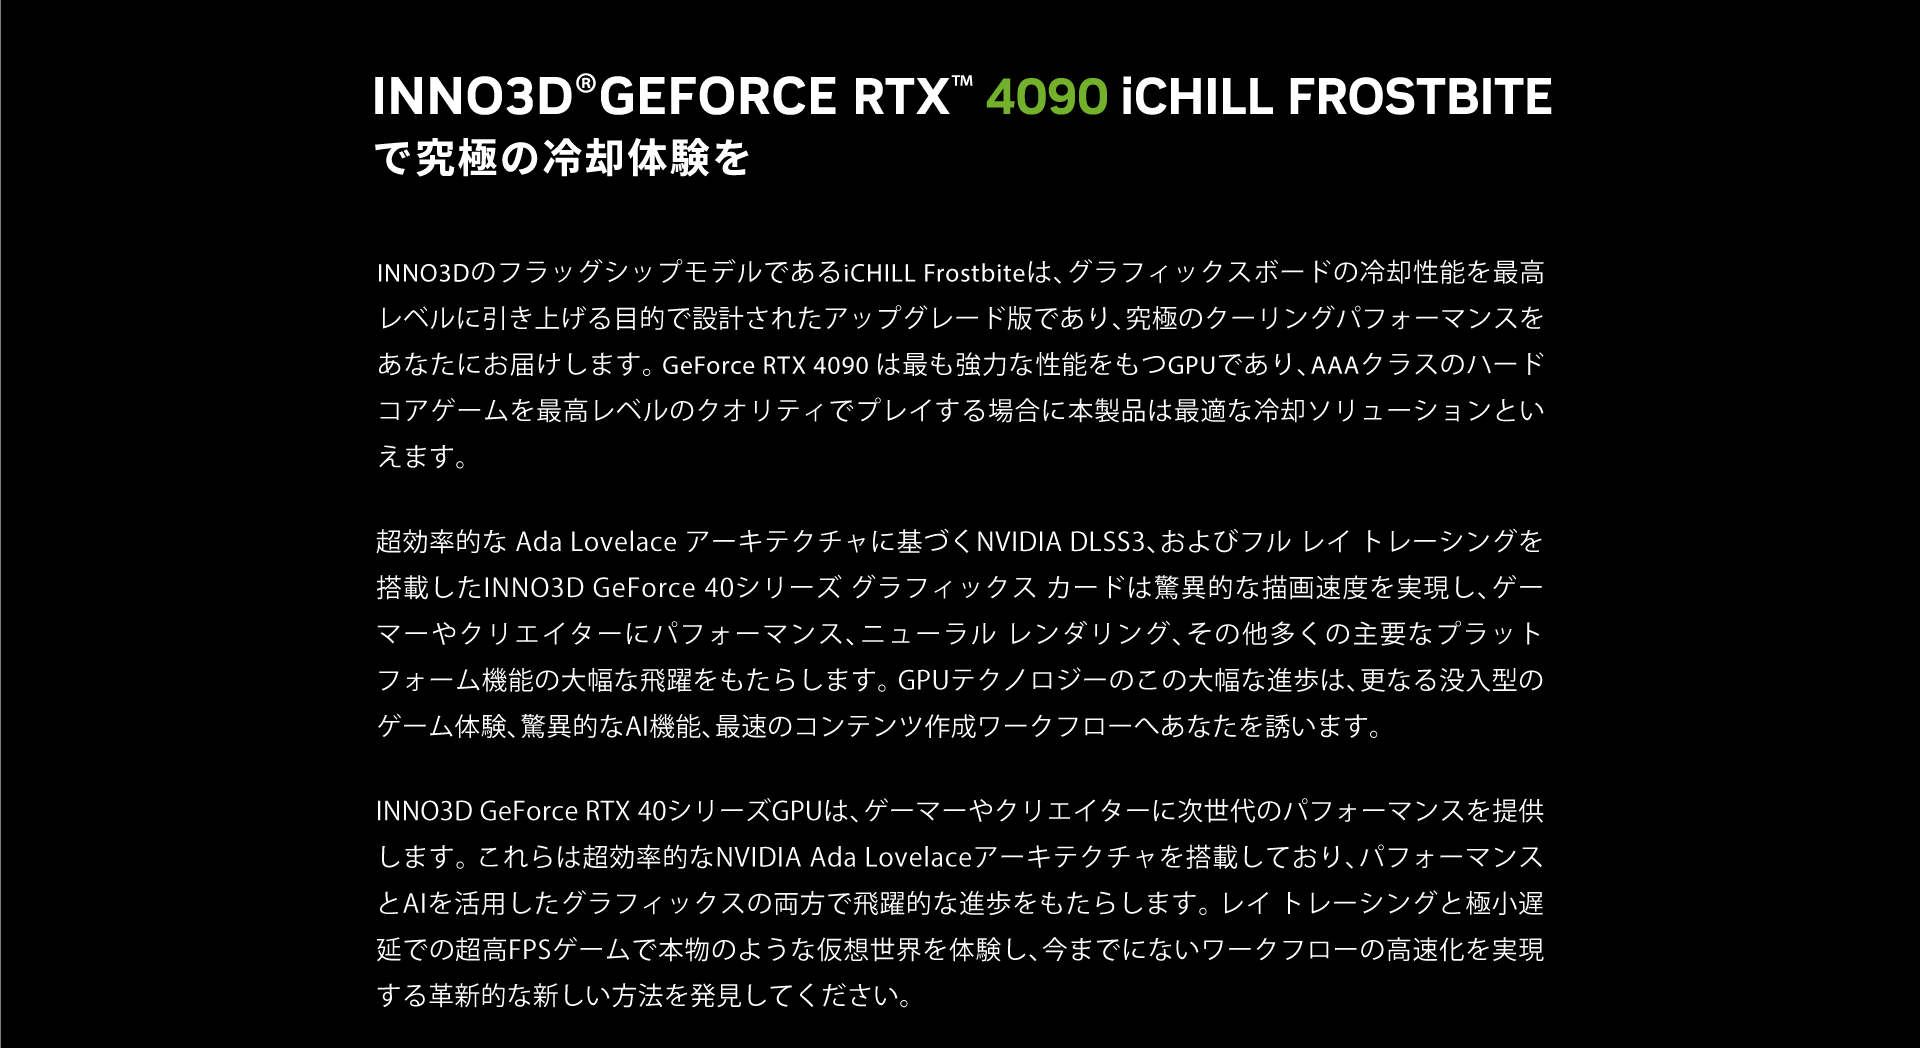 INNO3DのフラッグシップモデルであるiCHILL Frostbiteは、グラフィックスボードの冷却性能を最高レベルに引き上げる目的で設計されたアップグレード版であり、究極のクーリングパフォーマンスをあなたにお届けします。 GeForce RTX 4090 は最も強力な性能をもつGPUであり、AAAクラスのハードコアゲームを最高レベルのクオリティでプレイする場合に本製品は最適な冷却ソリューションといえます。